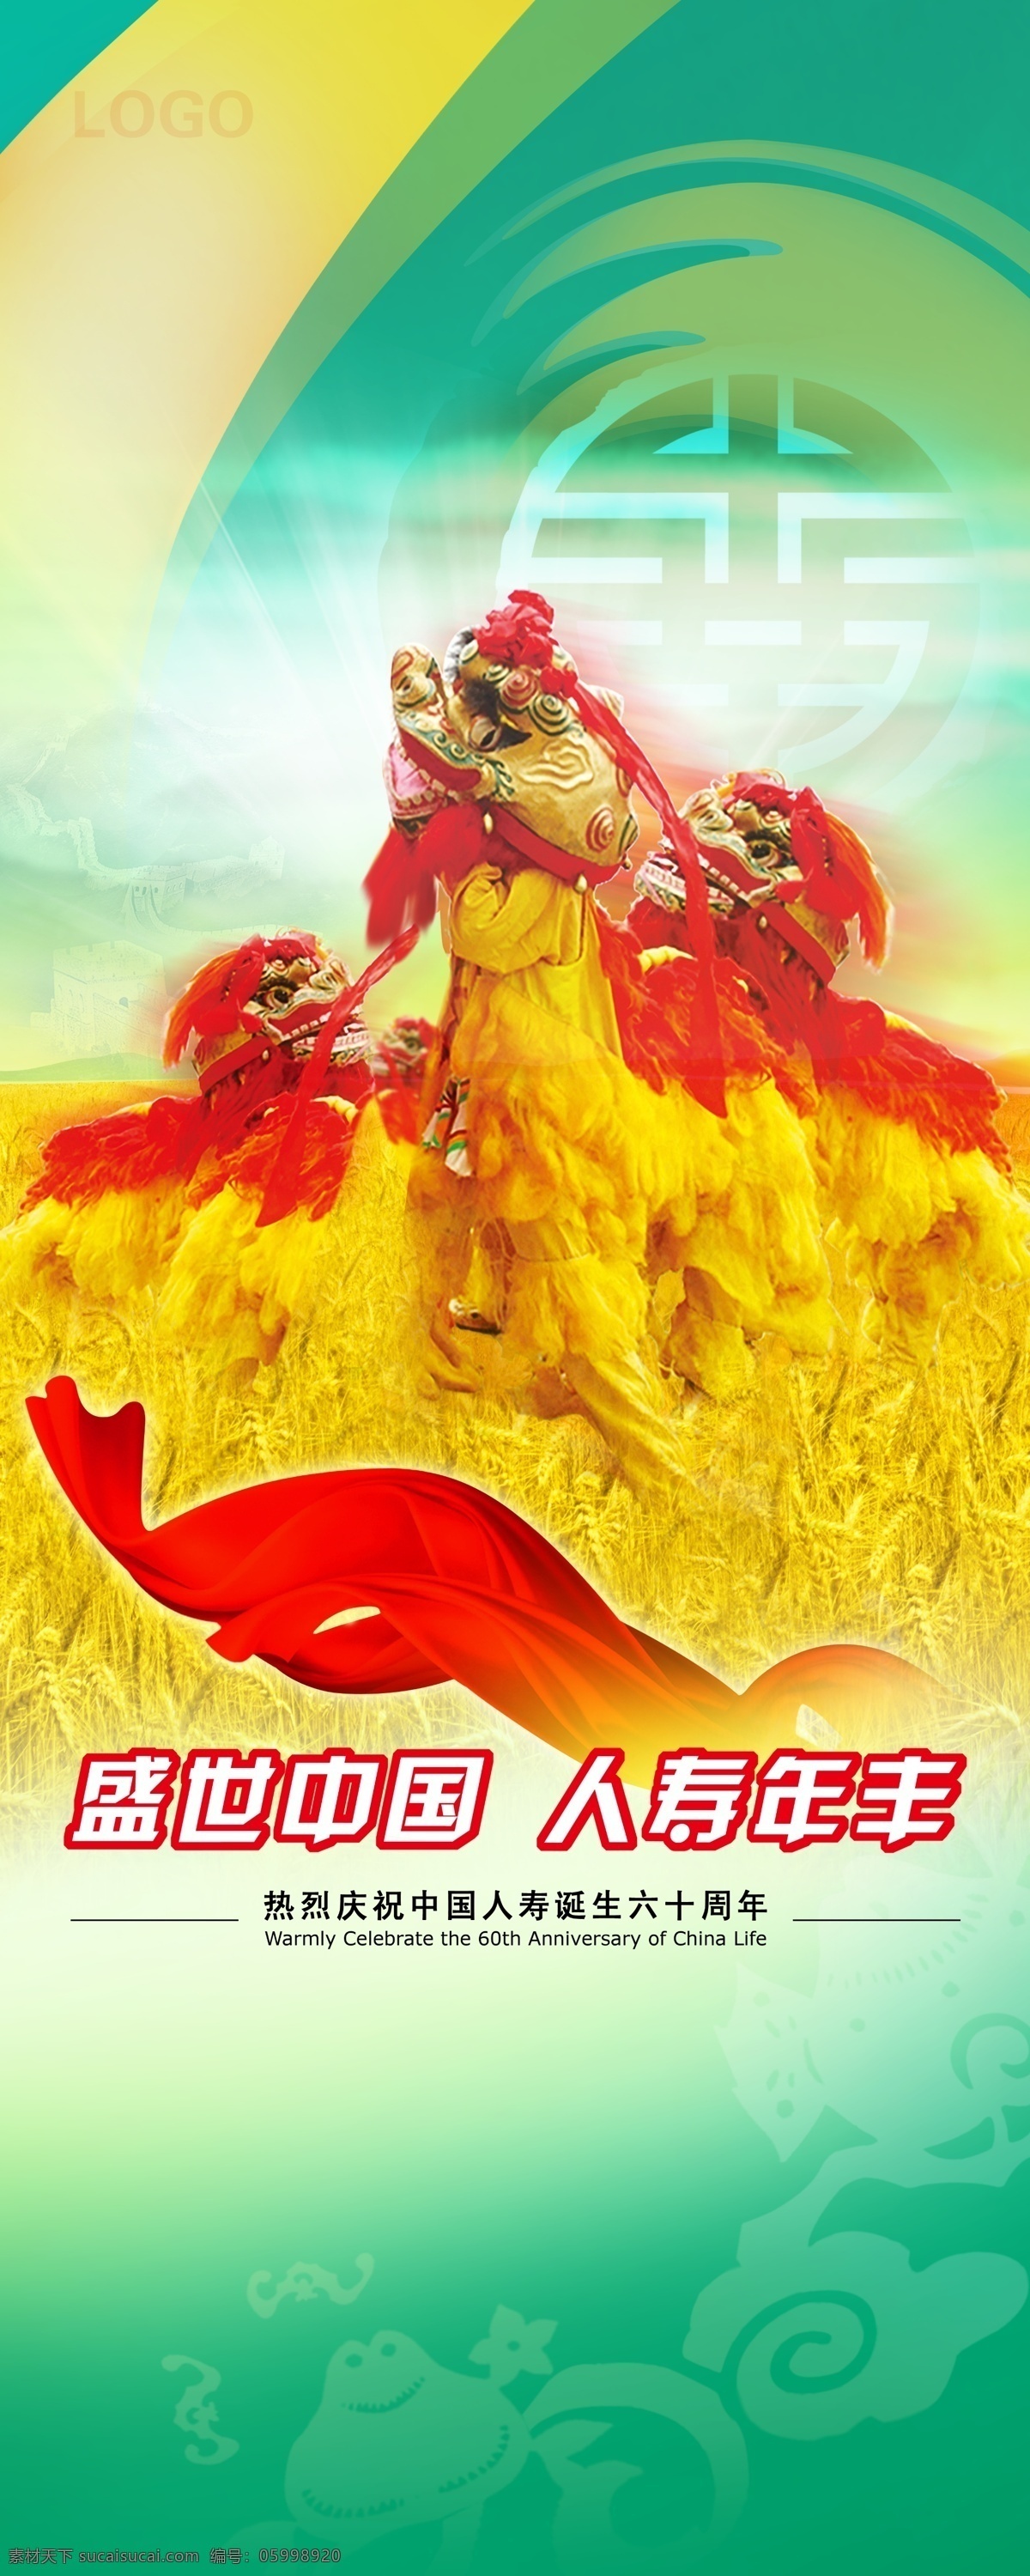 盛世中国 丰收 麦穗 绿色 红火 人物 温馨 生活 国寿 中国人寿 红色 黄色 飘带 花纹背景 x展架 易拉宝 竖展板